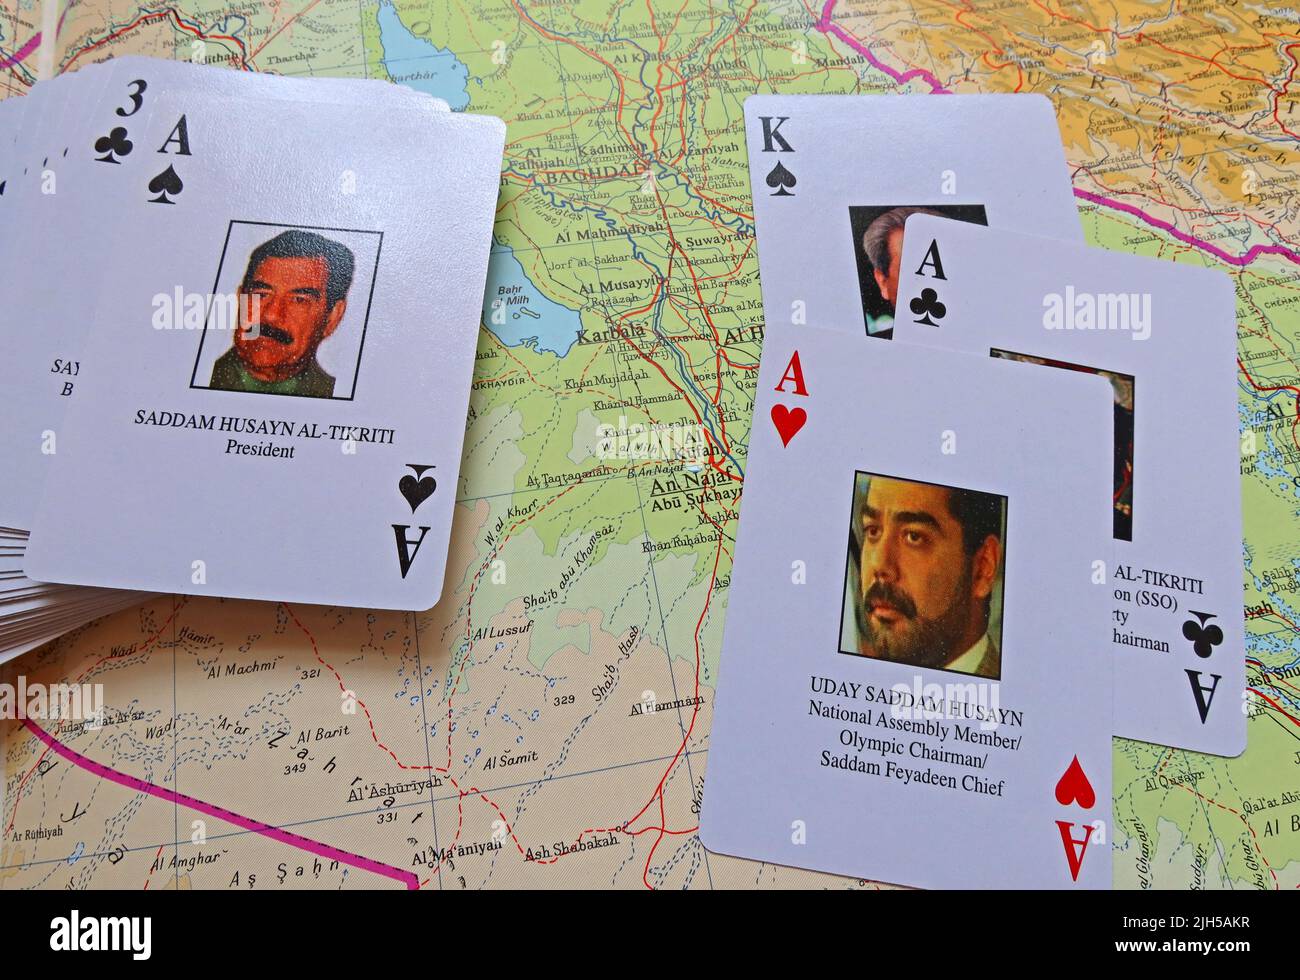 Saddam Hussein Abd al-Majid al-Tikriti, as de jeux de crades cartes, émis par les Etats-Unis, pendant la guerre de coalition en Irak, 2003 invasion, les Irakiens les plus recherchés Banque D'Images